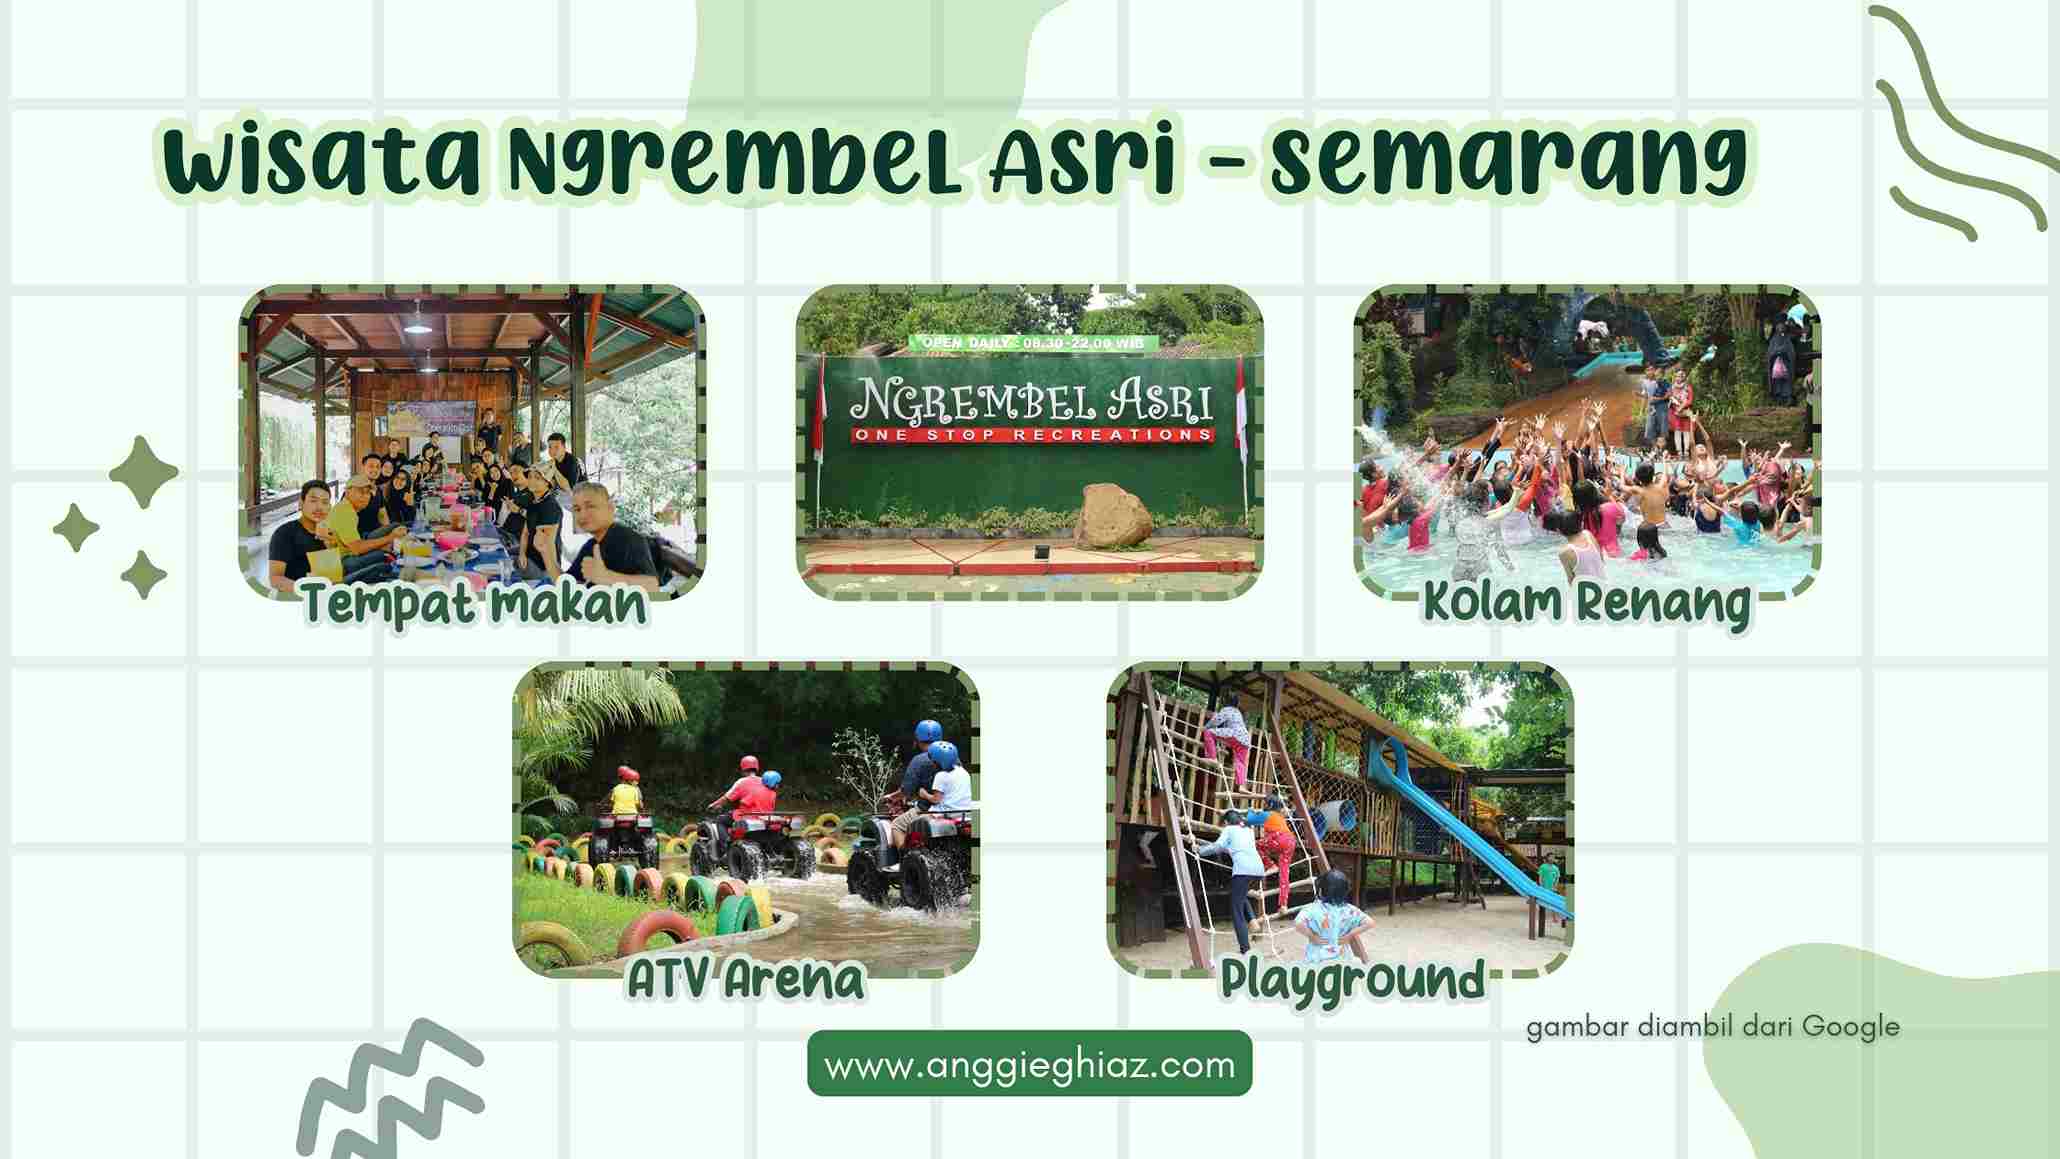 Wisata Ngrembel Asri - Semarang